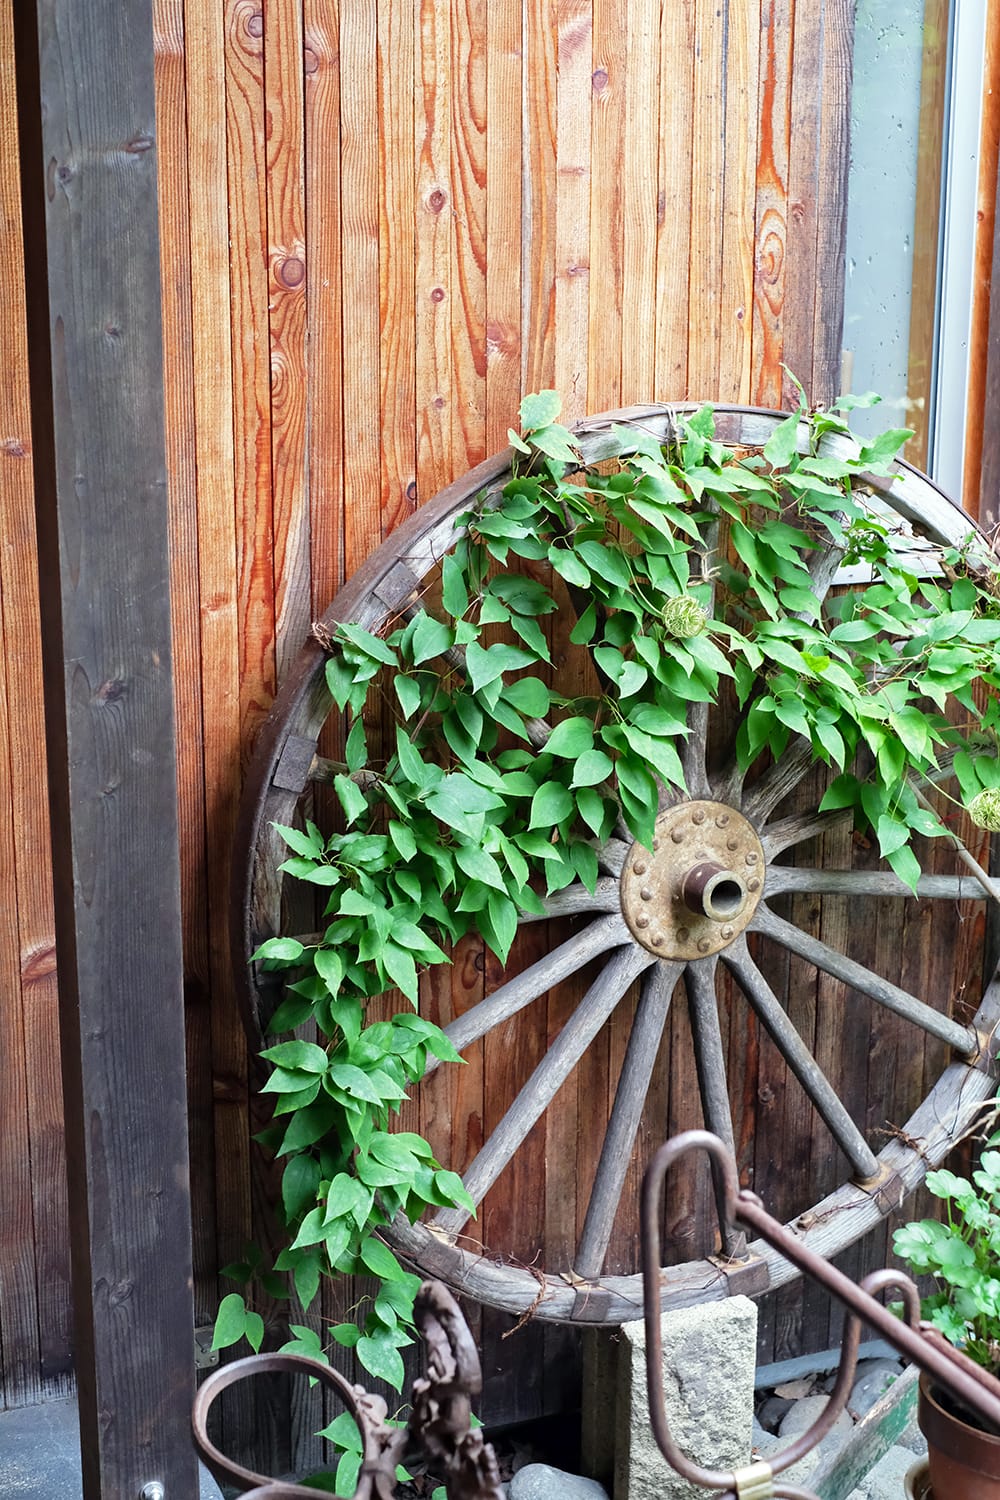 MEON農苑（ミオンのうえん）の木製車輪に絡んだクレマチス